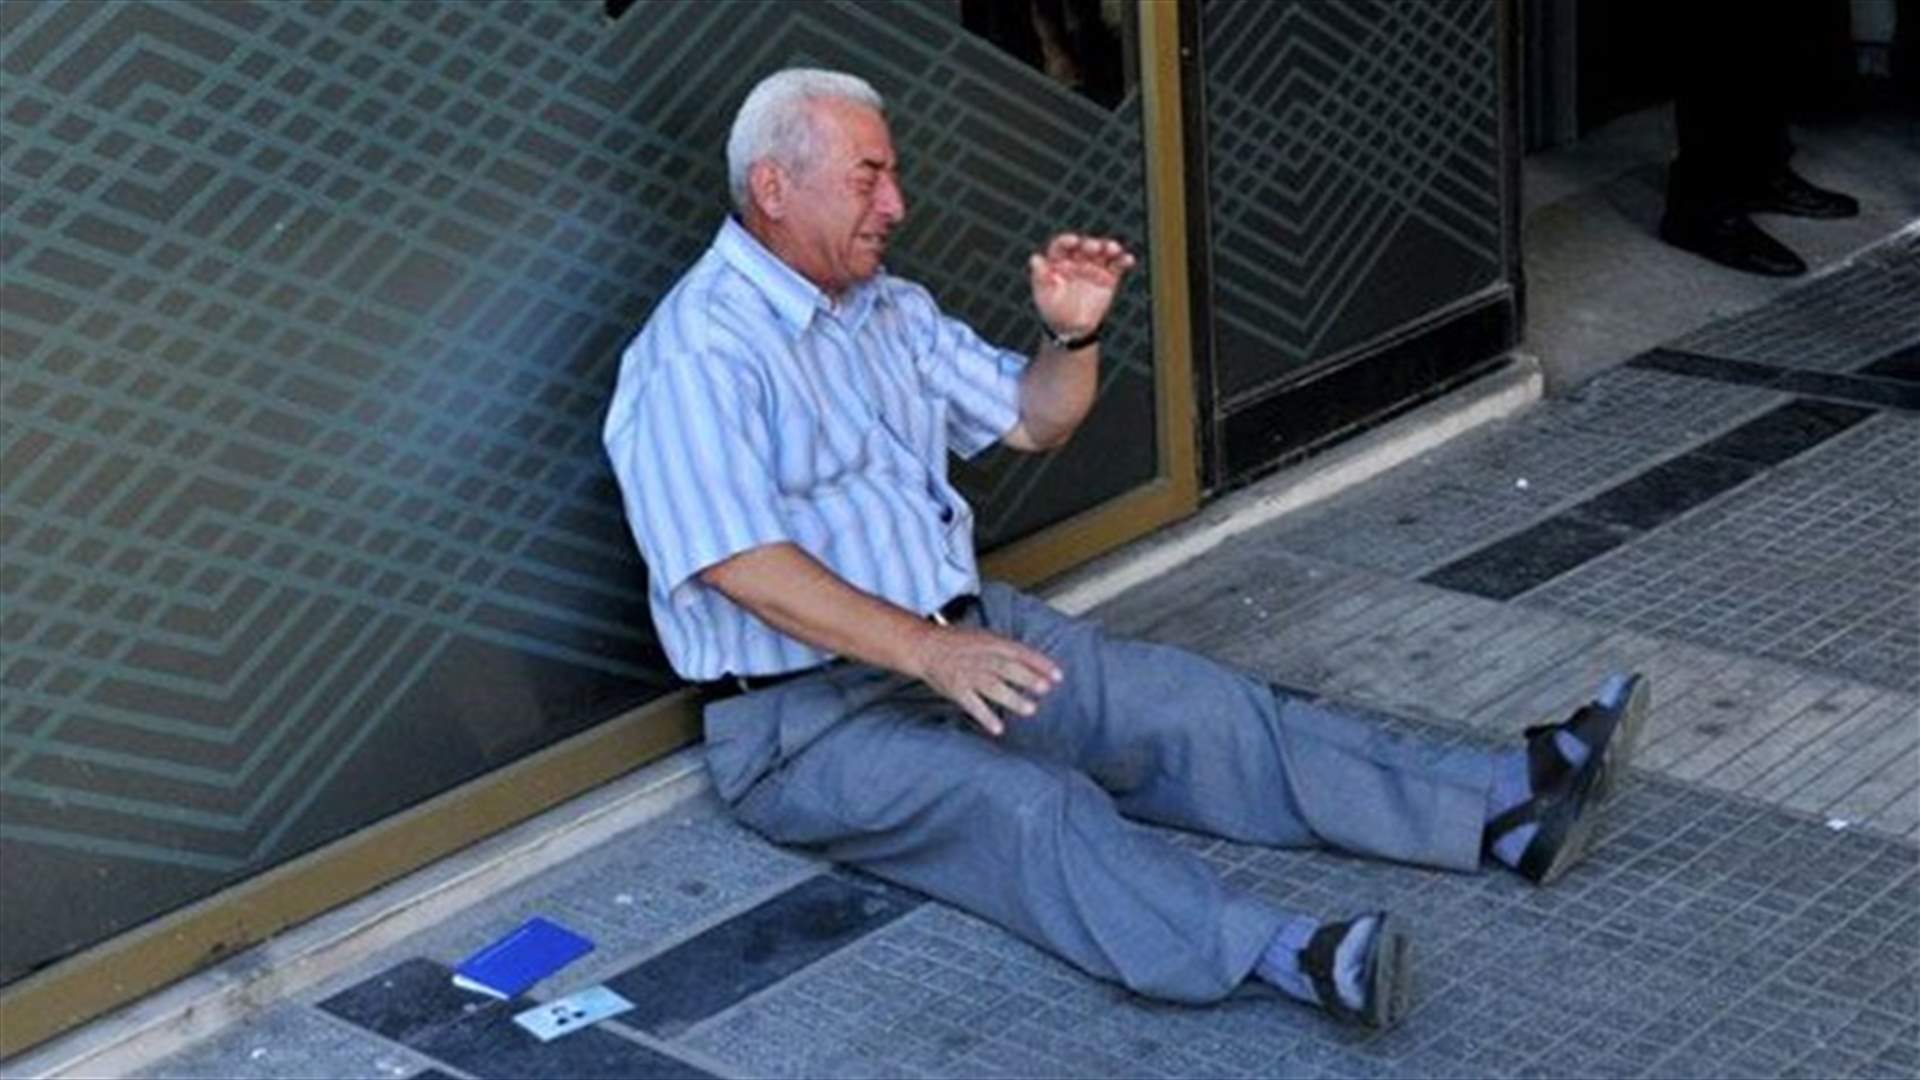 جلس يبكي عند باب المصرف : قصة تختصر معاناة اليونانيين